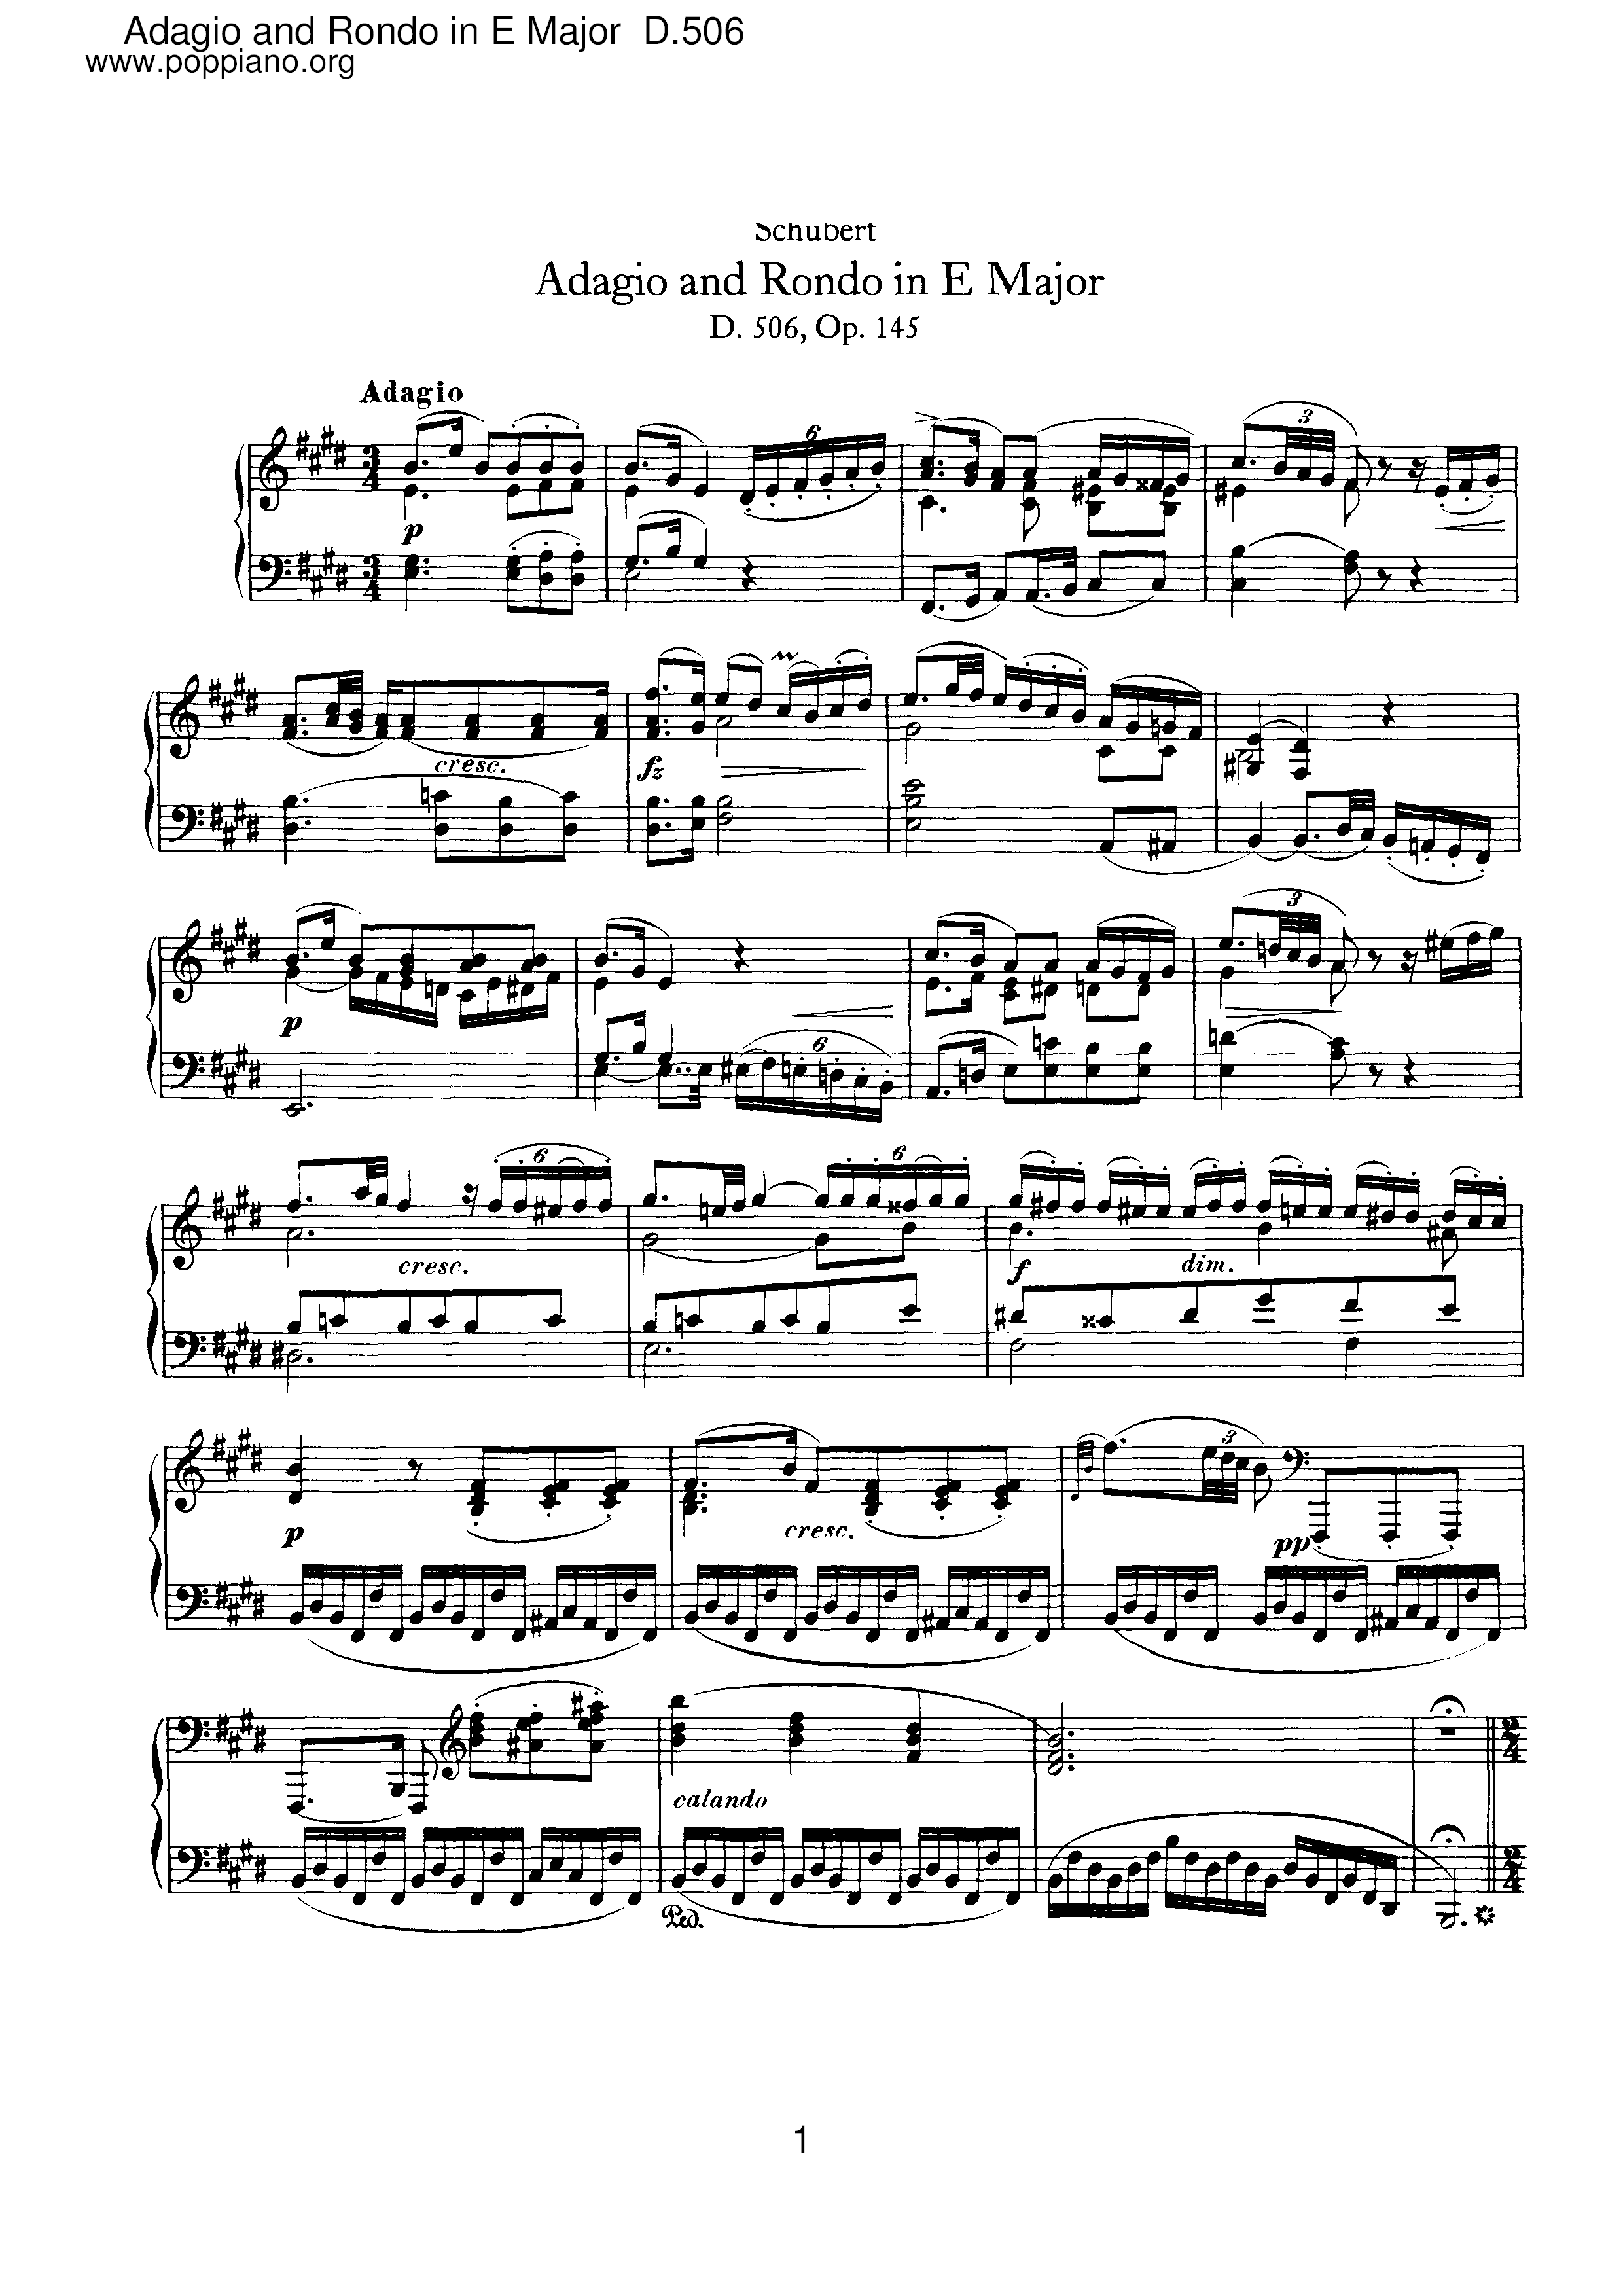 Adagio and Rondo in E major, D.506 Score